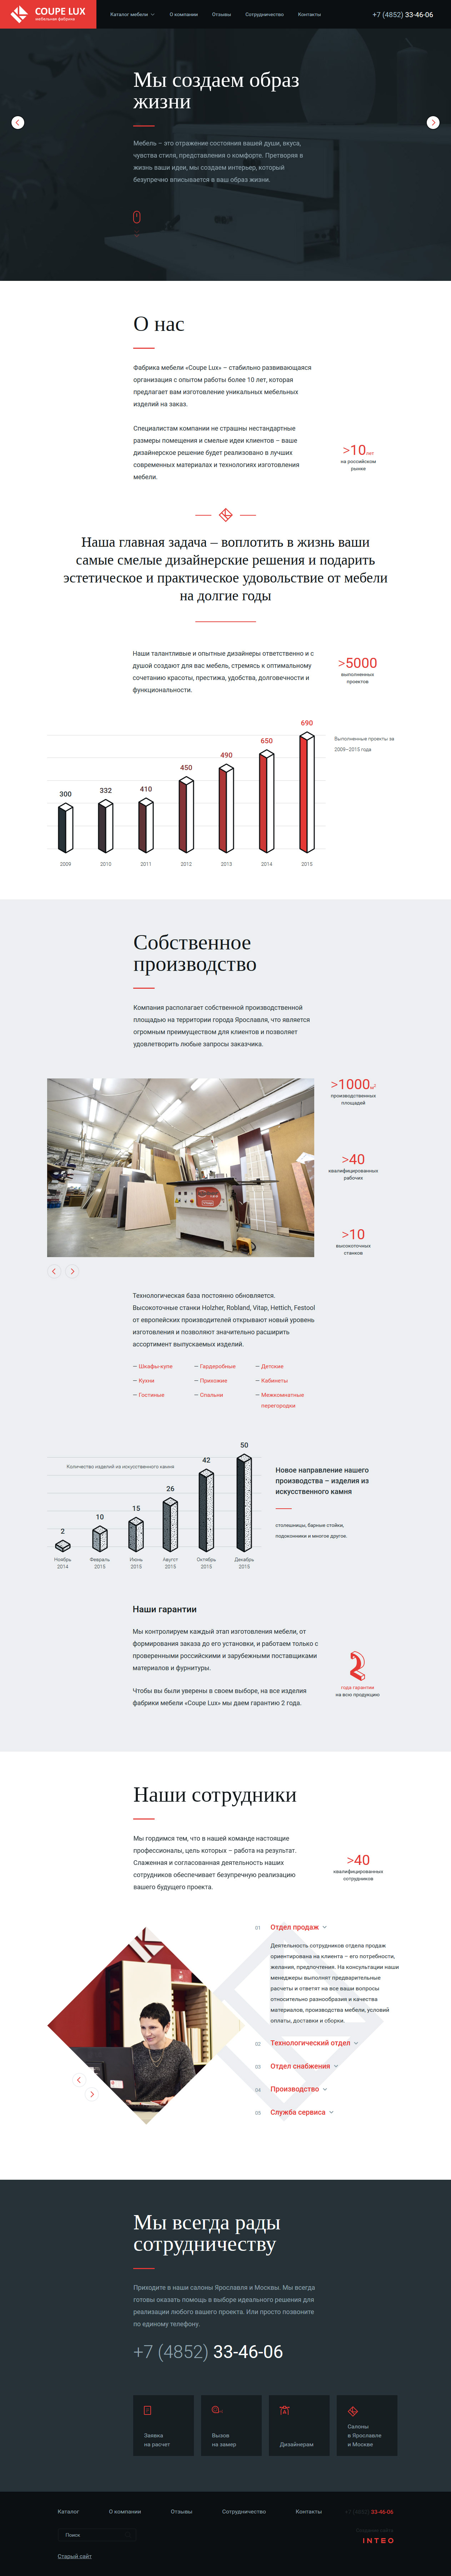 coupelux - производство мебели на заказ